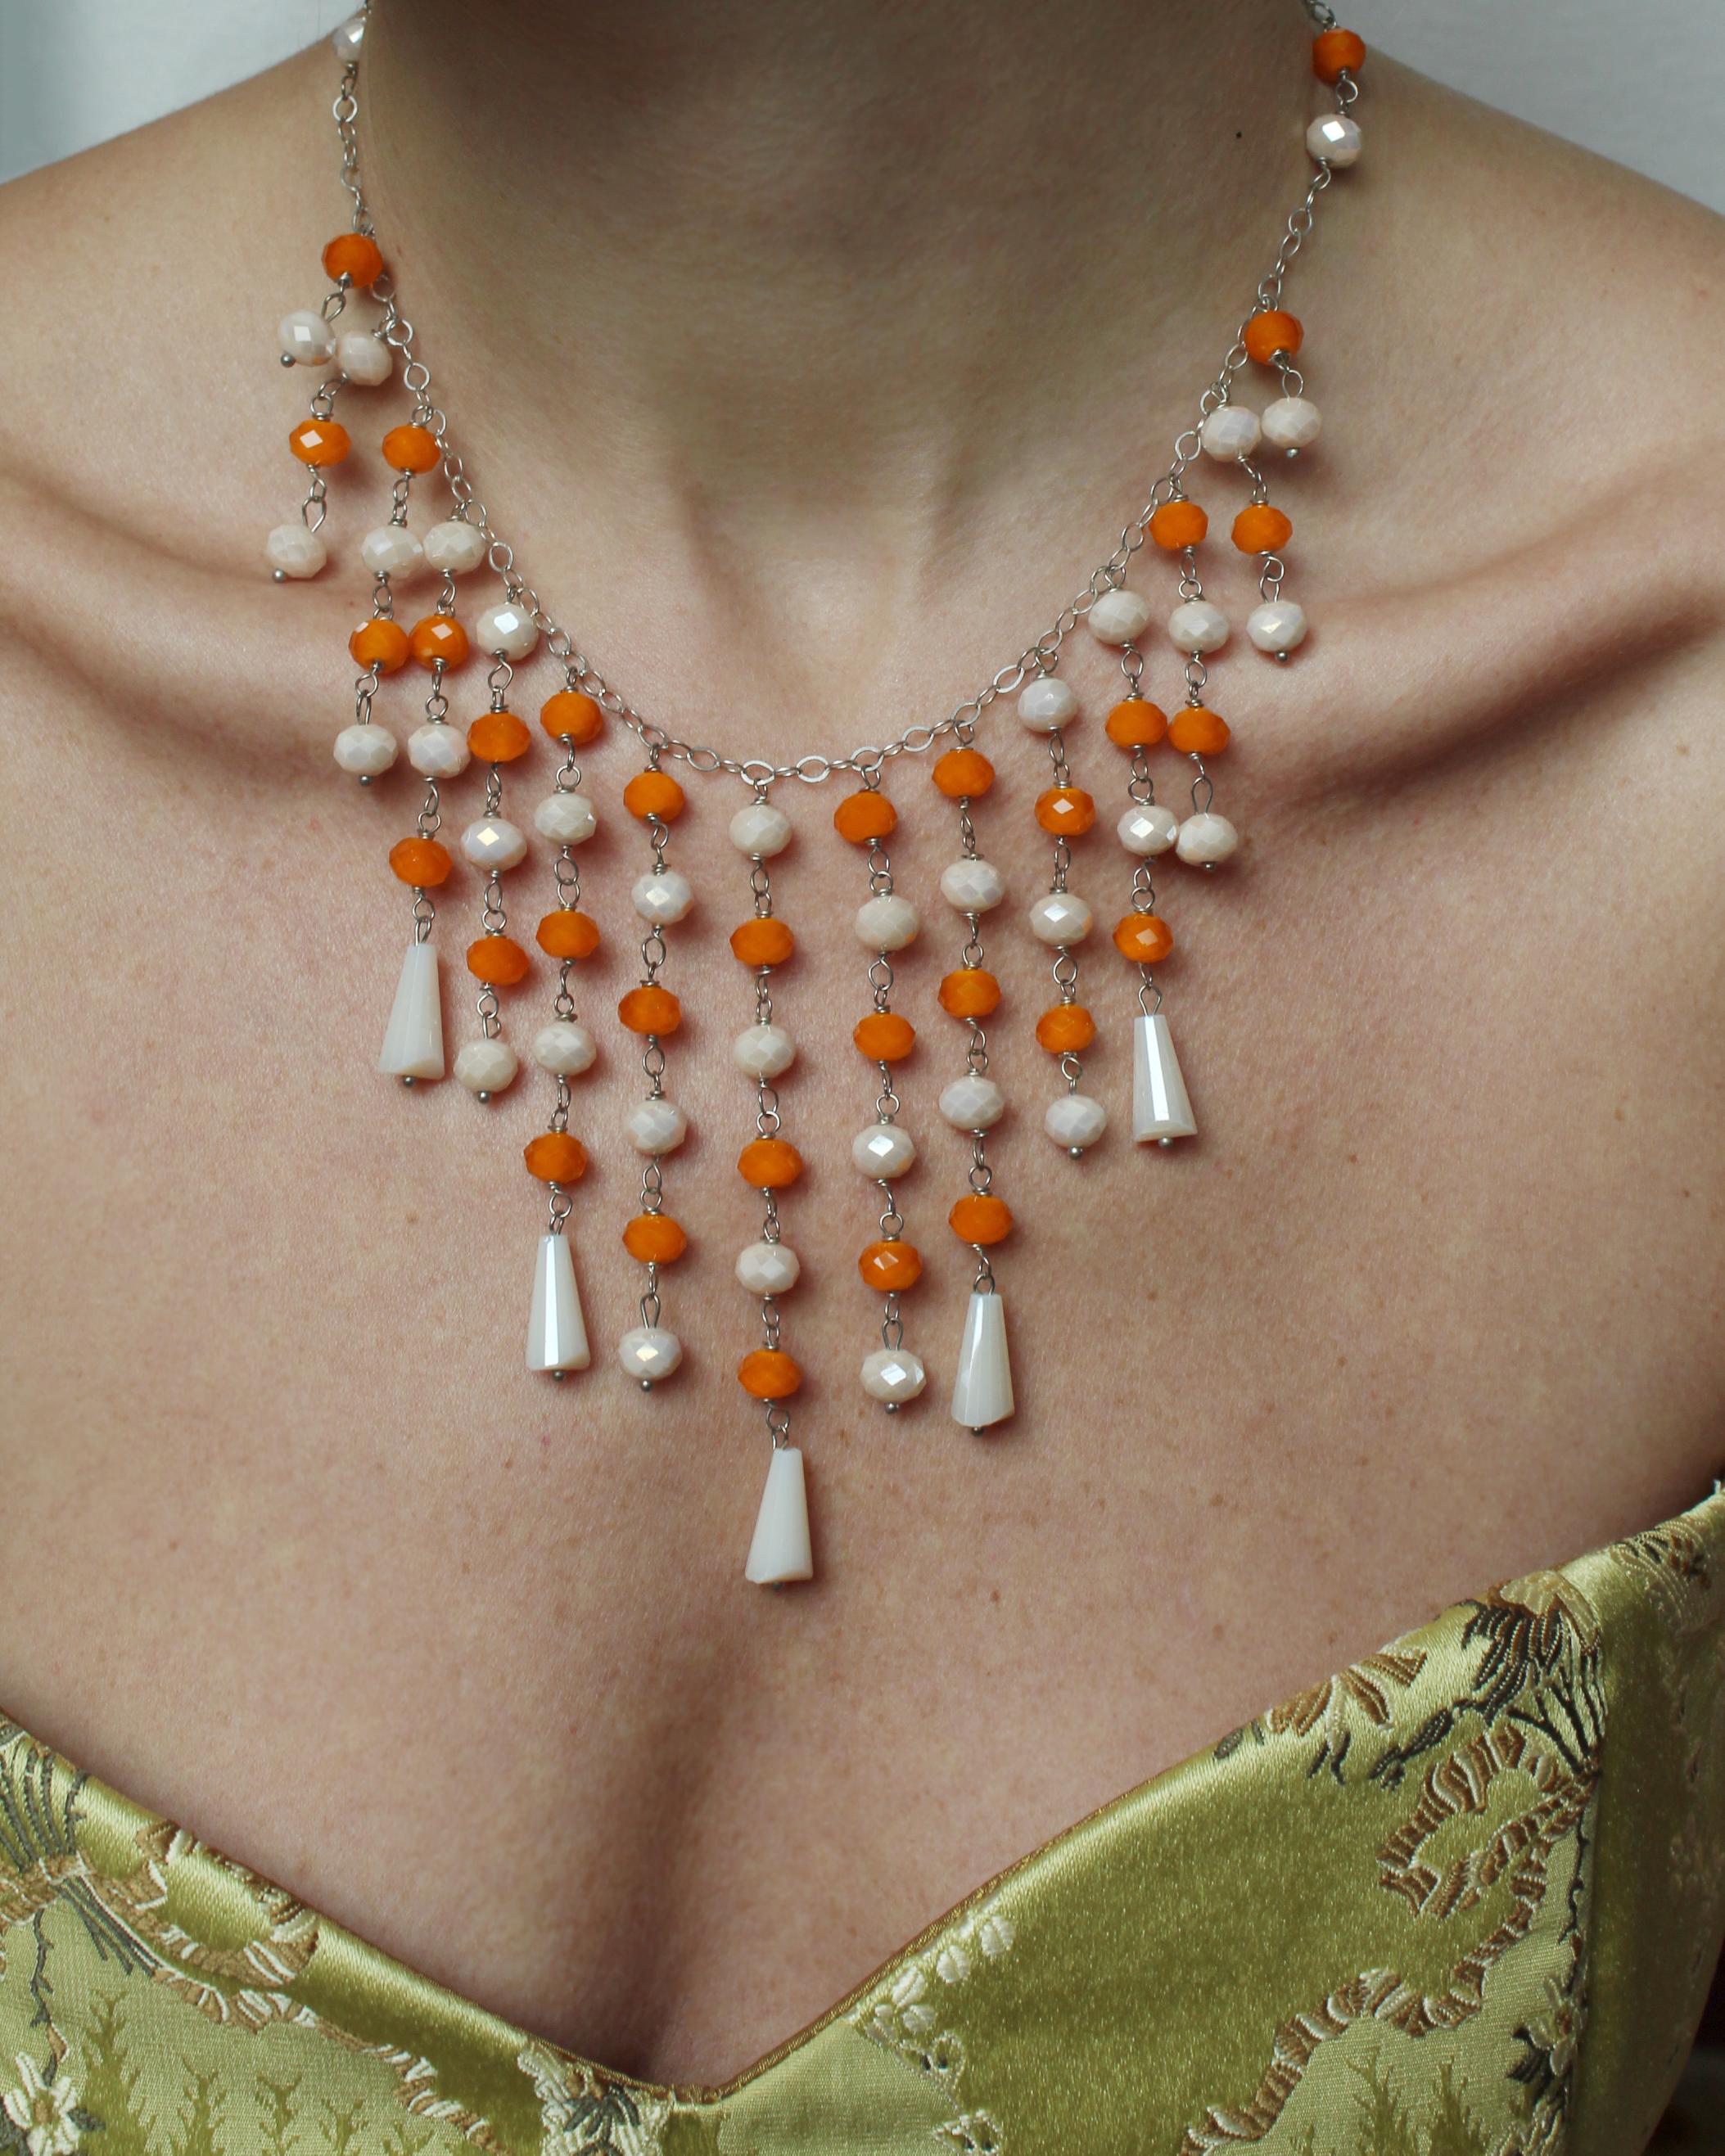 Diese wunderschöne Kristall-Wasserfall-Halskette wurde in den 1950er Jahren aus feinem tschechischen Kristall gefertigt. Die Kristalle sind wunderschön facettiert, in Orange und einem milchigen Elfenbeinton, an einer silbernen Kette - die